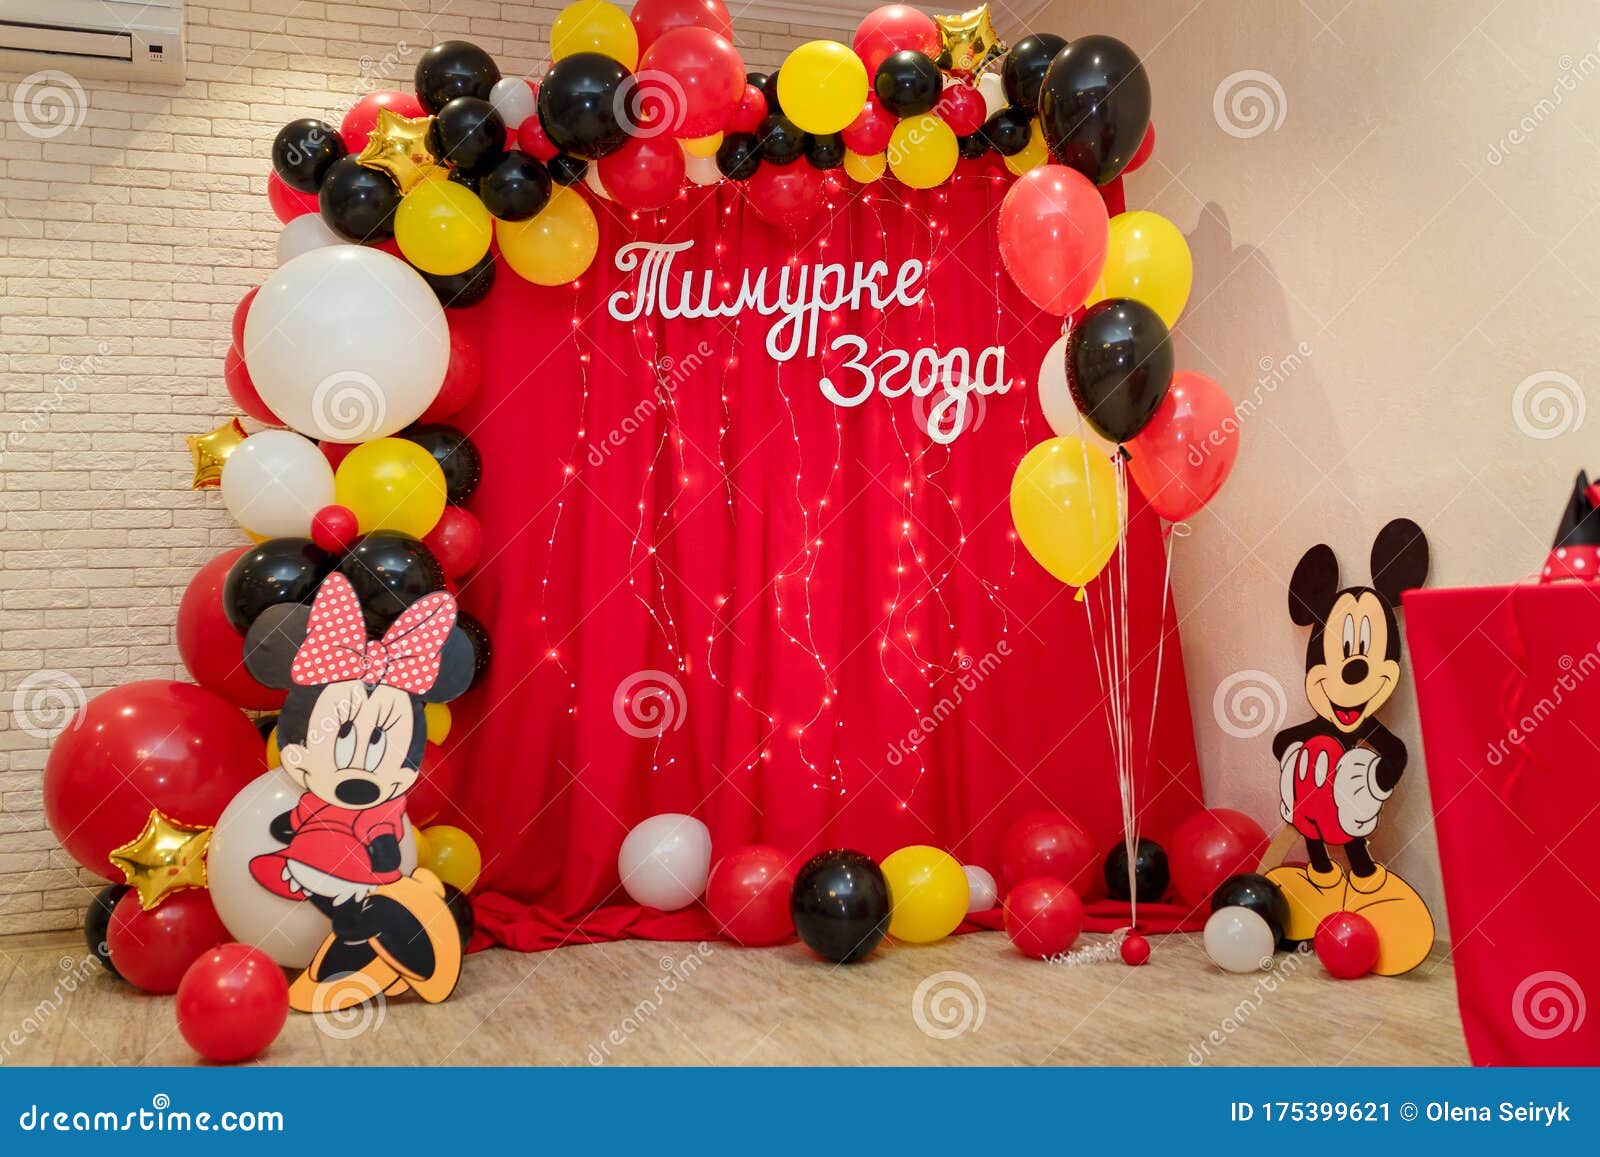 Mickey Y Minnie Mouse Decoraciones Con Dibujos Animados De Walt Disney Y Globos Para Ninos Foto Editorial Imagen De Famoso Editorial